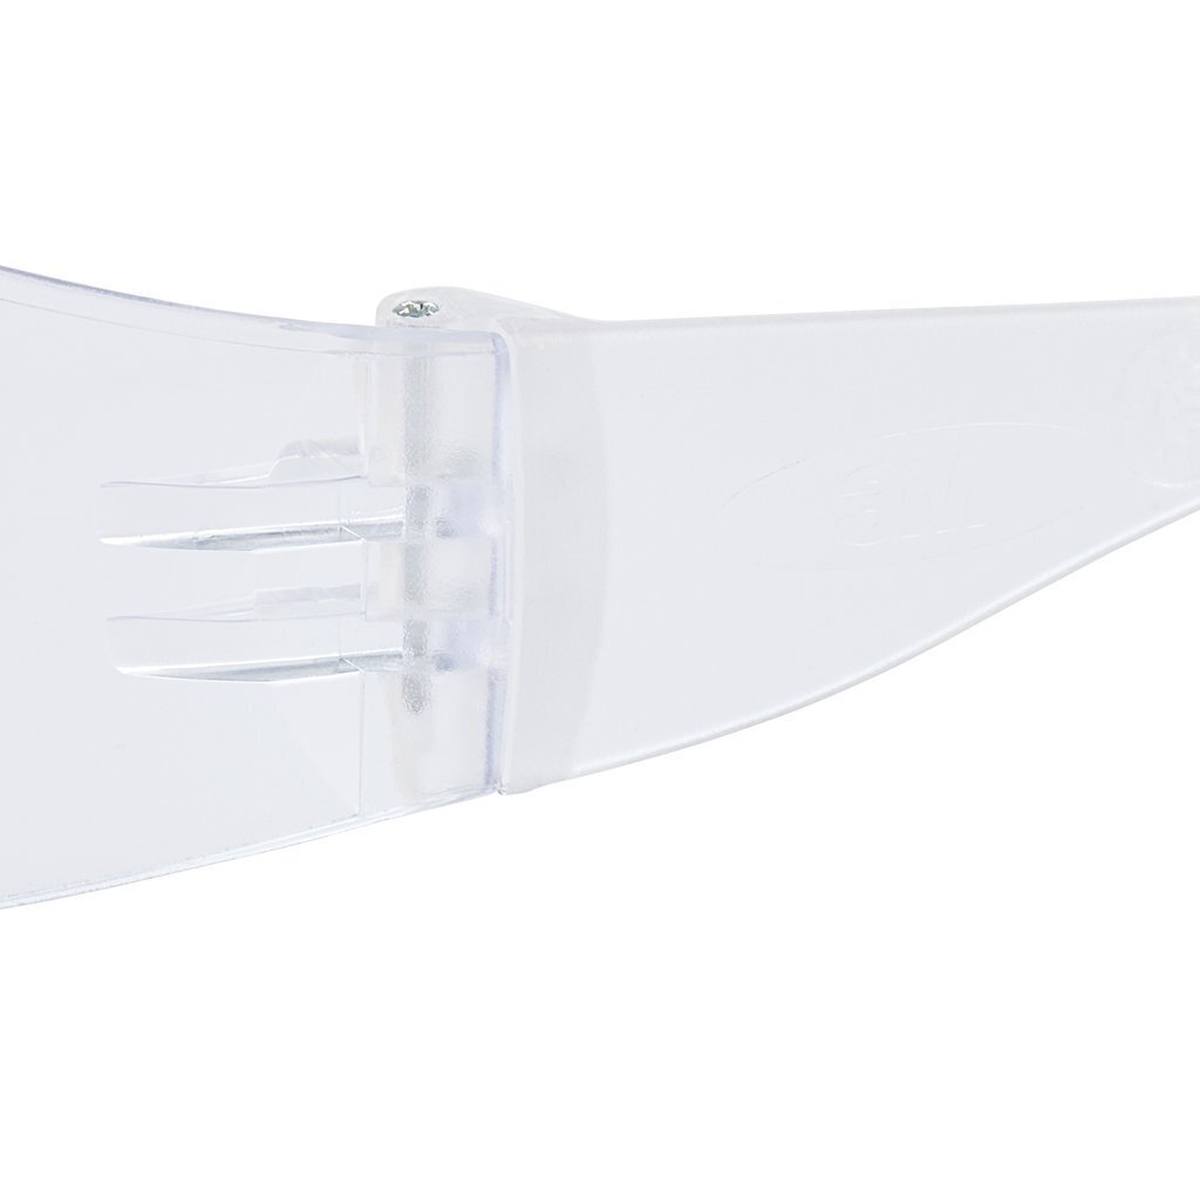 3M Gafas de protección Virtua con revestimiento antirrayado, lentes transparentes, 71500-00001